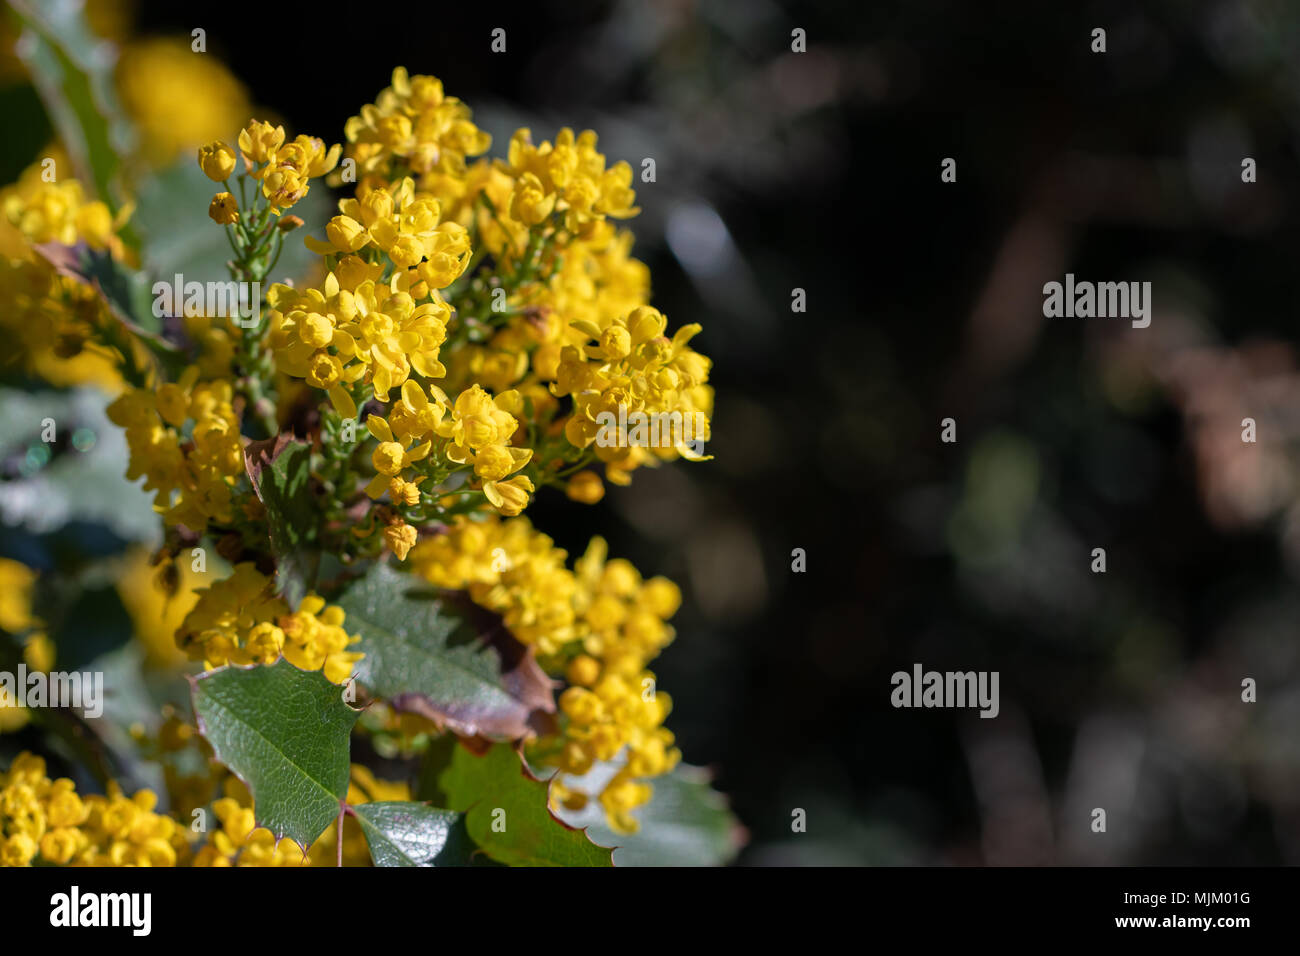 Mahonia aquifolium, Holly-lasciava crespino, Holly-leaf Oregon-uva in fiore. Close up vista macro con uno spazio vuoto per il testo. Foto Stock